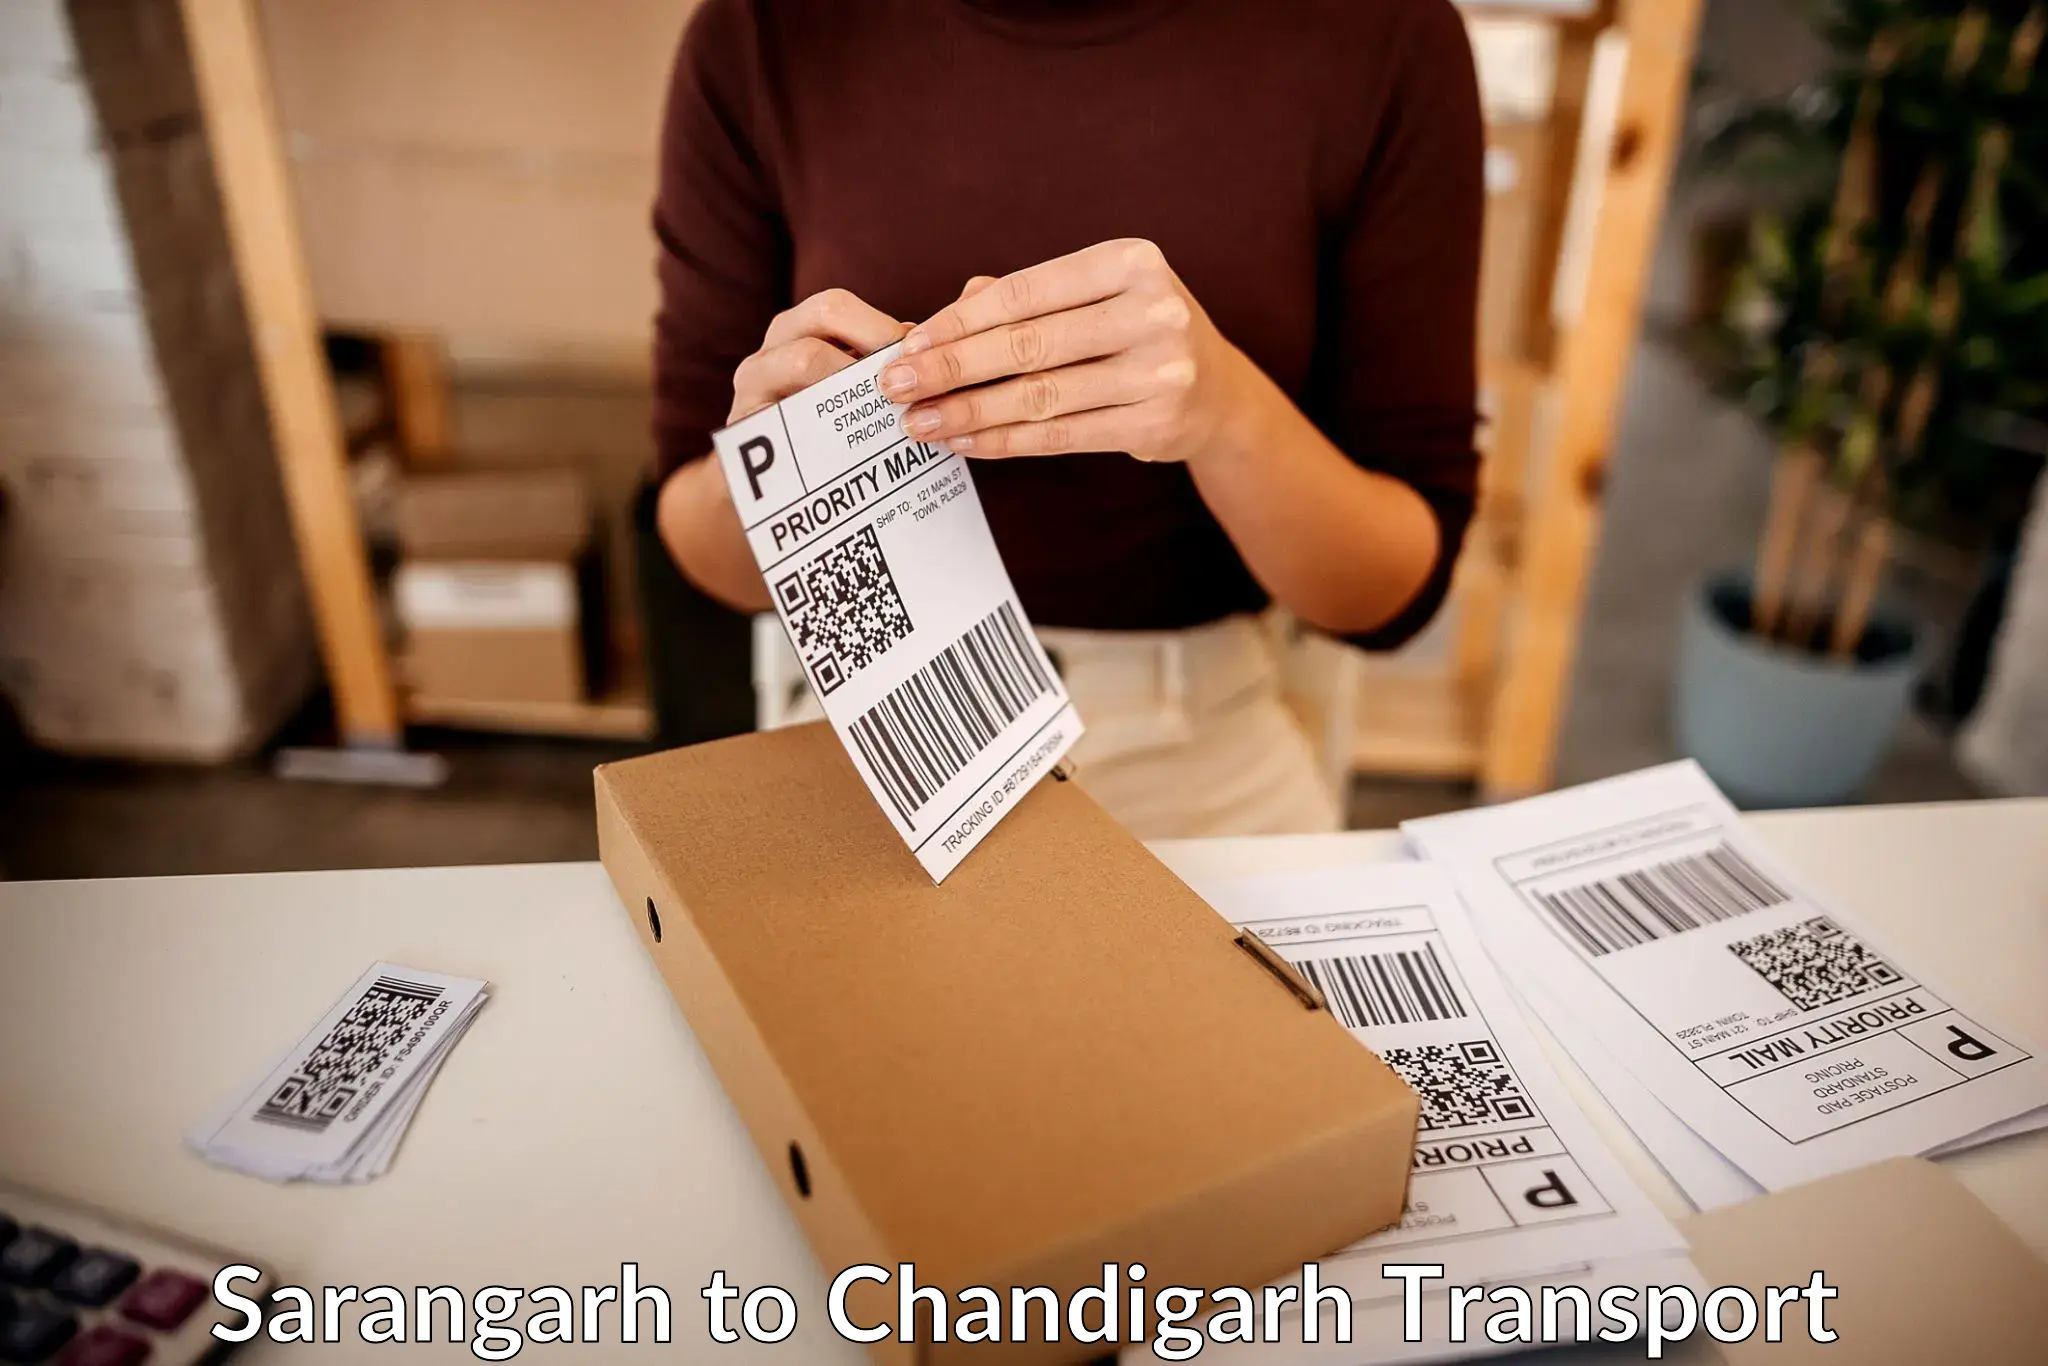 Transport in sharing in Sarangarh to Chandigarh